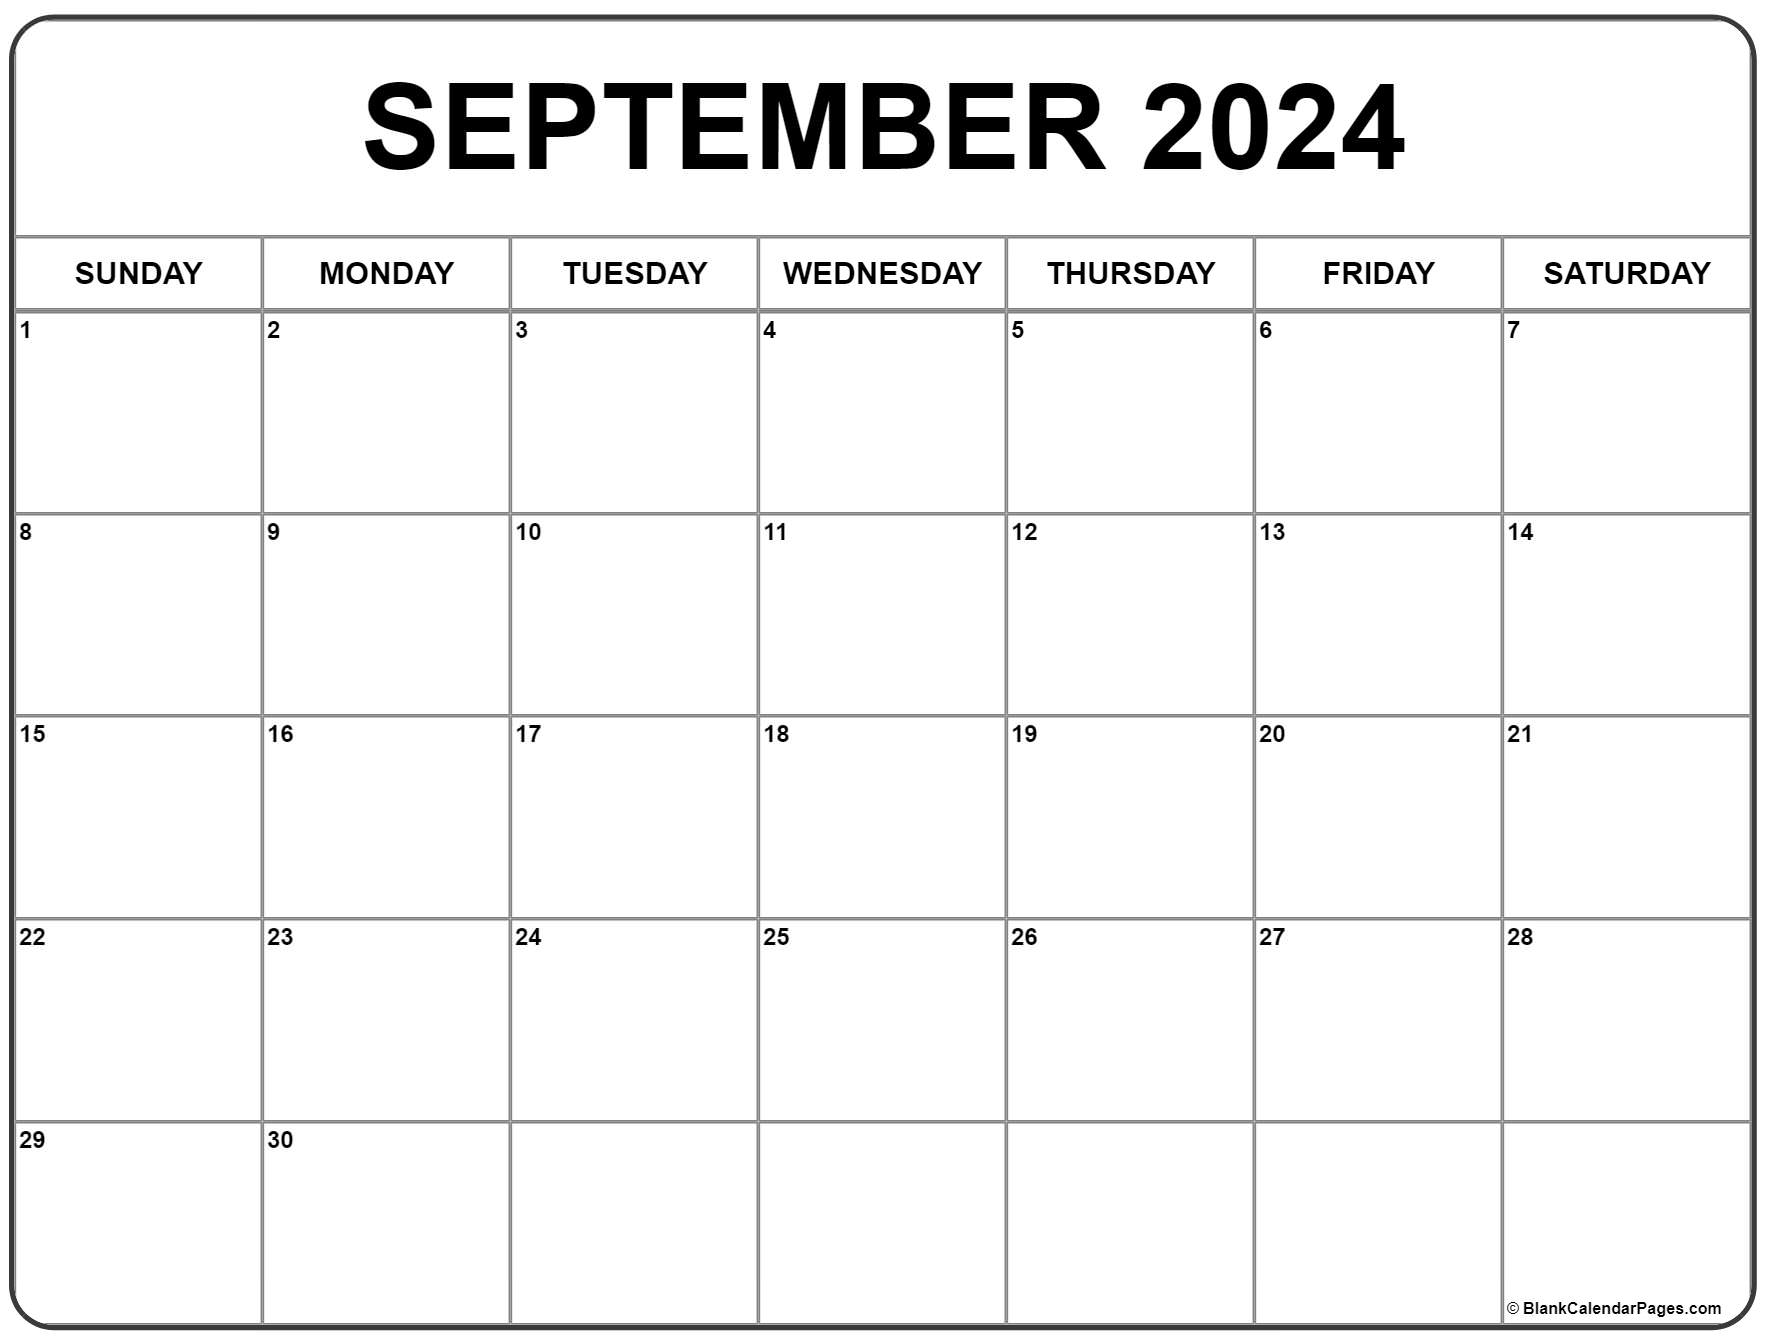 September 2024 Calendar | Free Printable Calendar for Printable Sept 2024 Calendar